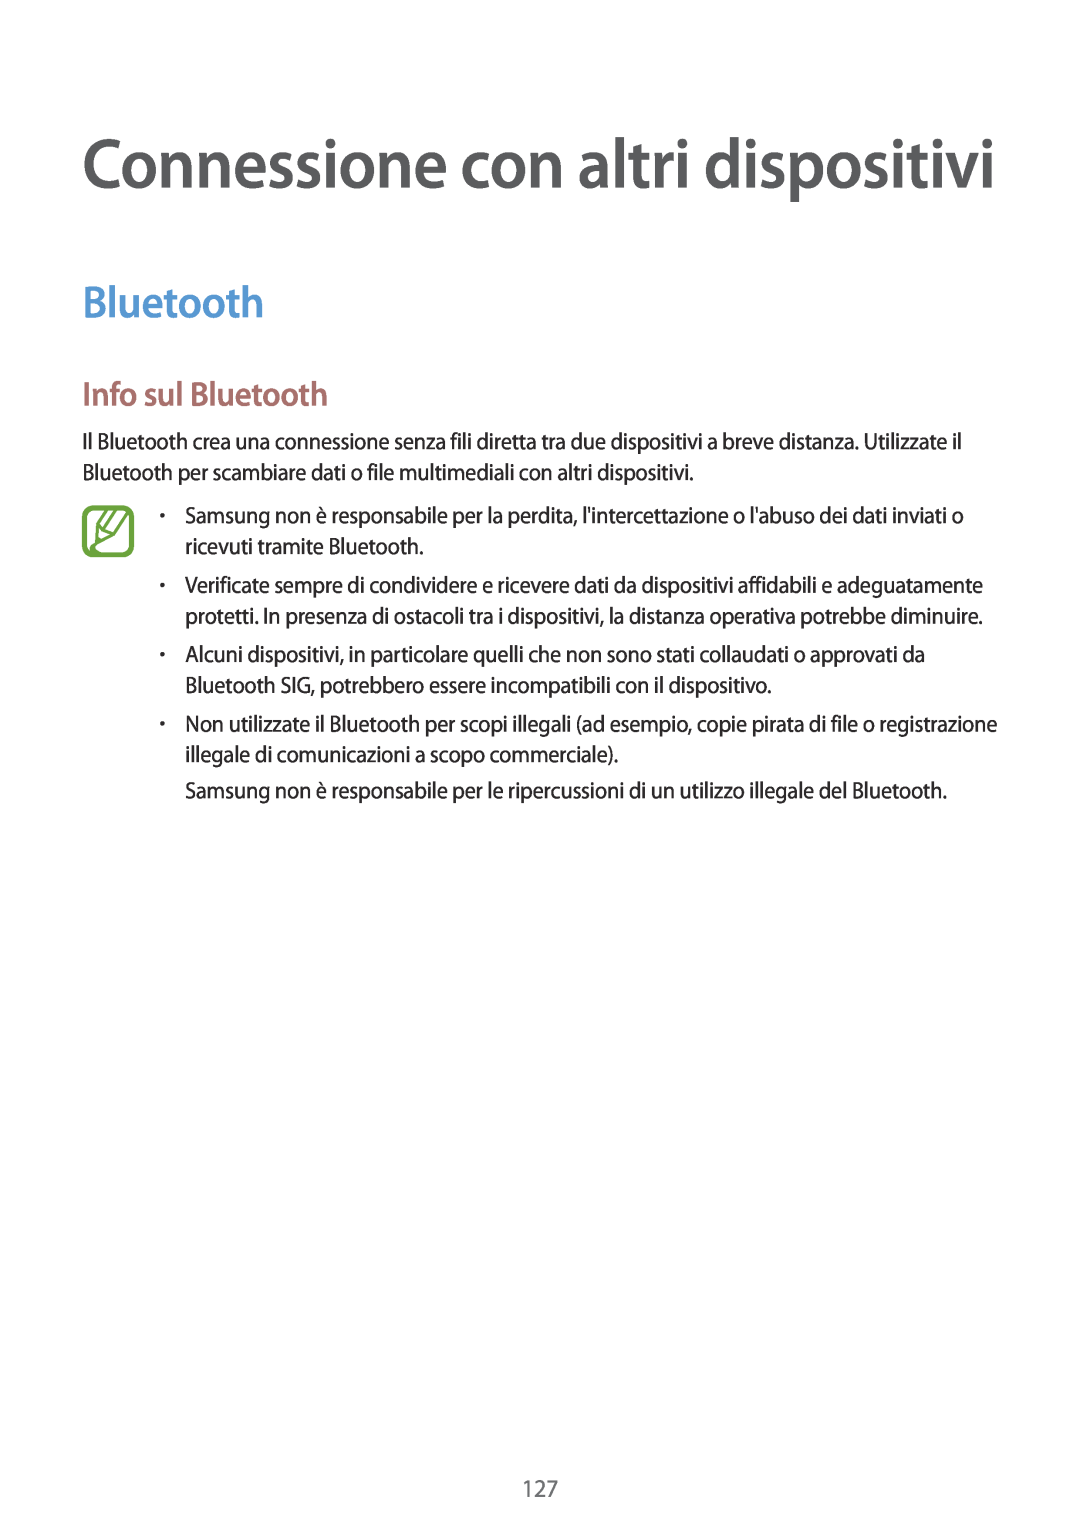 Samsung SM-T700NTSAXEO, SM-T700NZWATUR, SM-T700NTSATUR manual Info sul Bluetooth, Connessione con altri dispositivi 